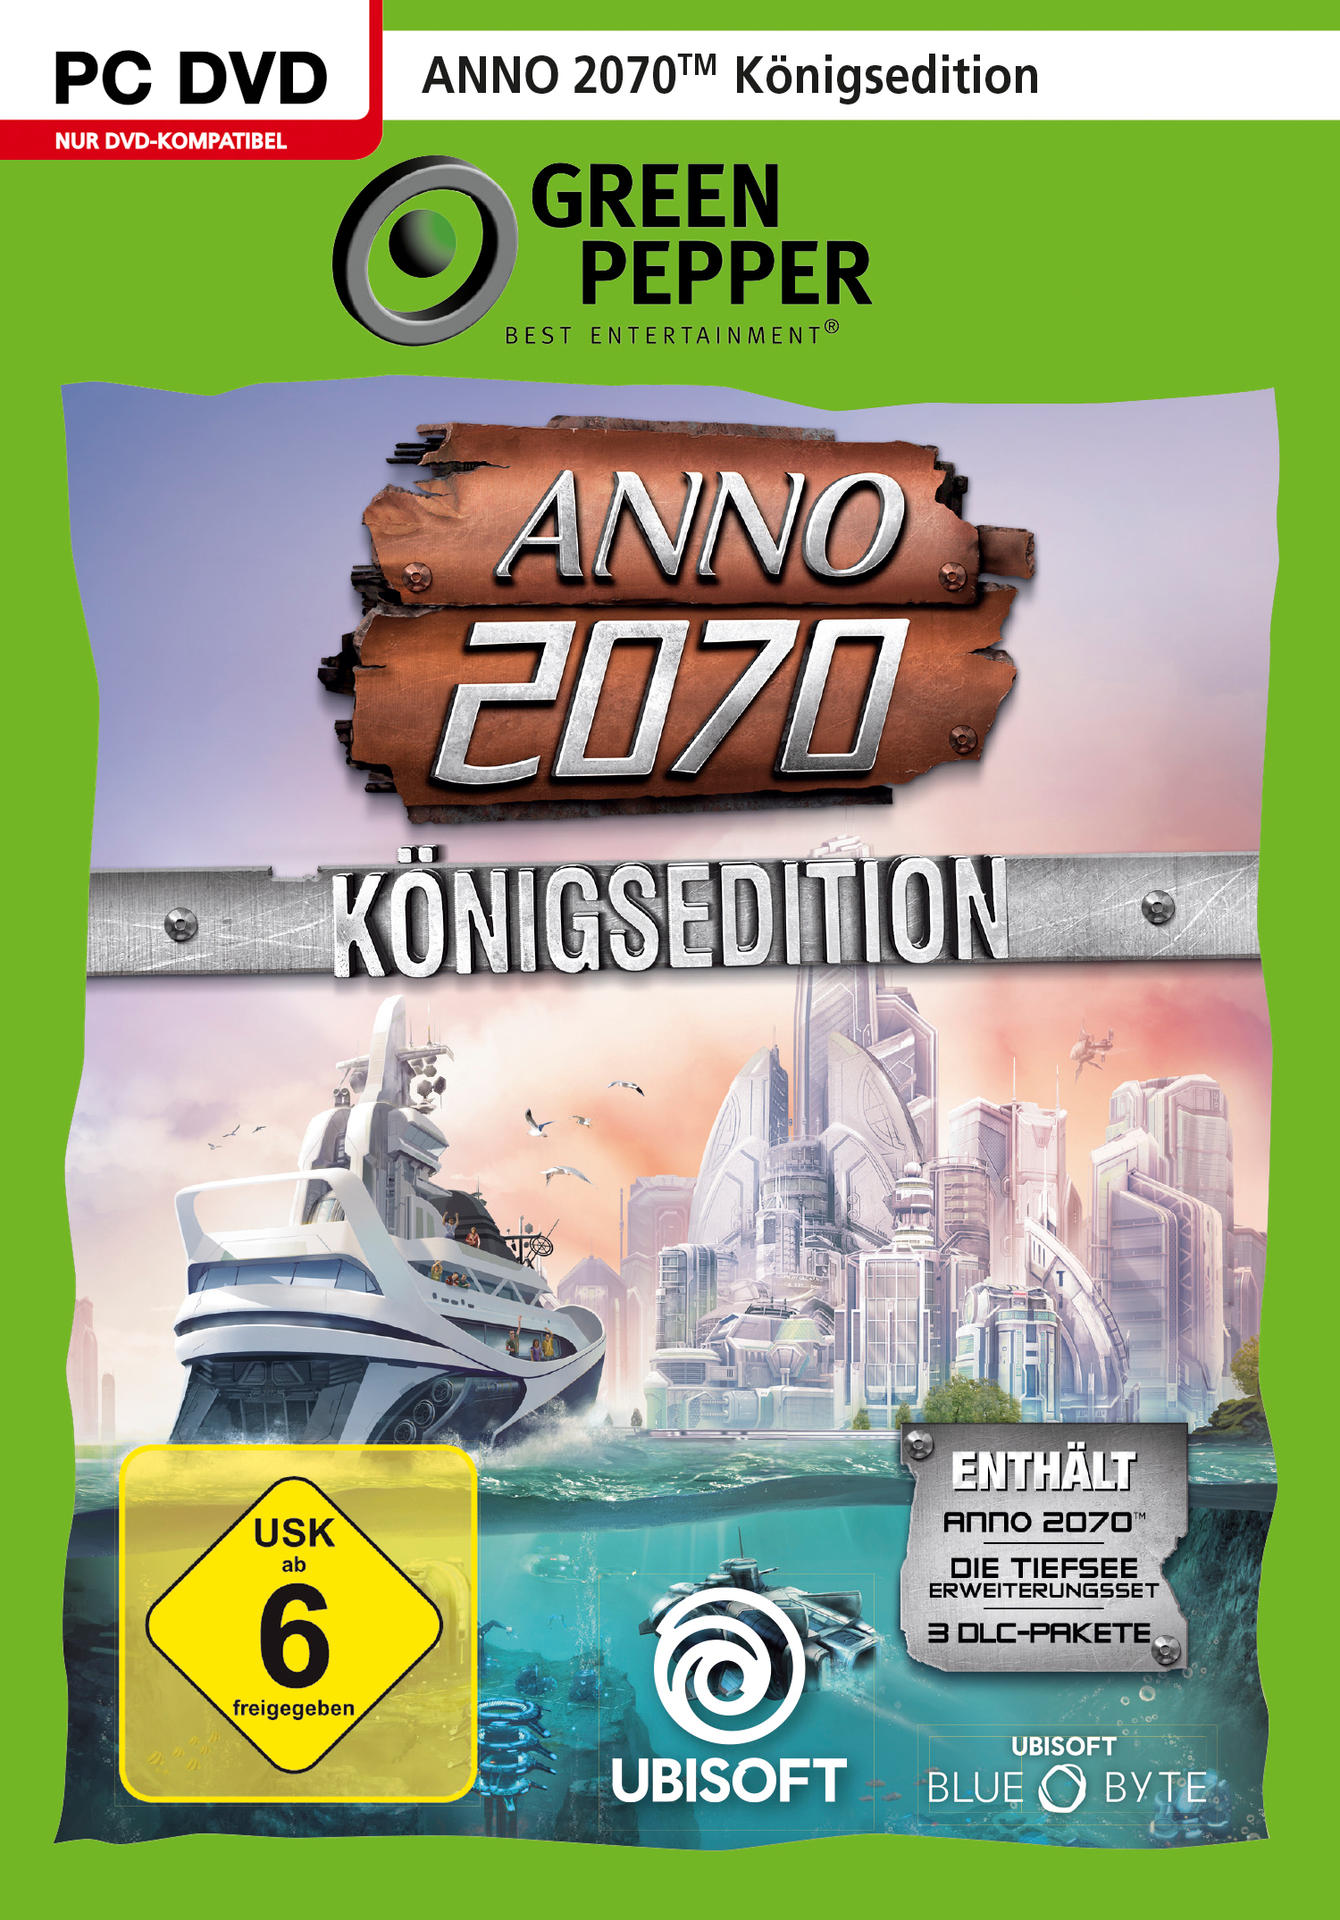 Königsedition 2070 ANNO [PC] -